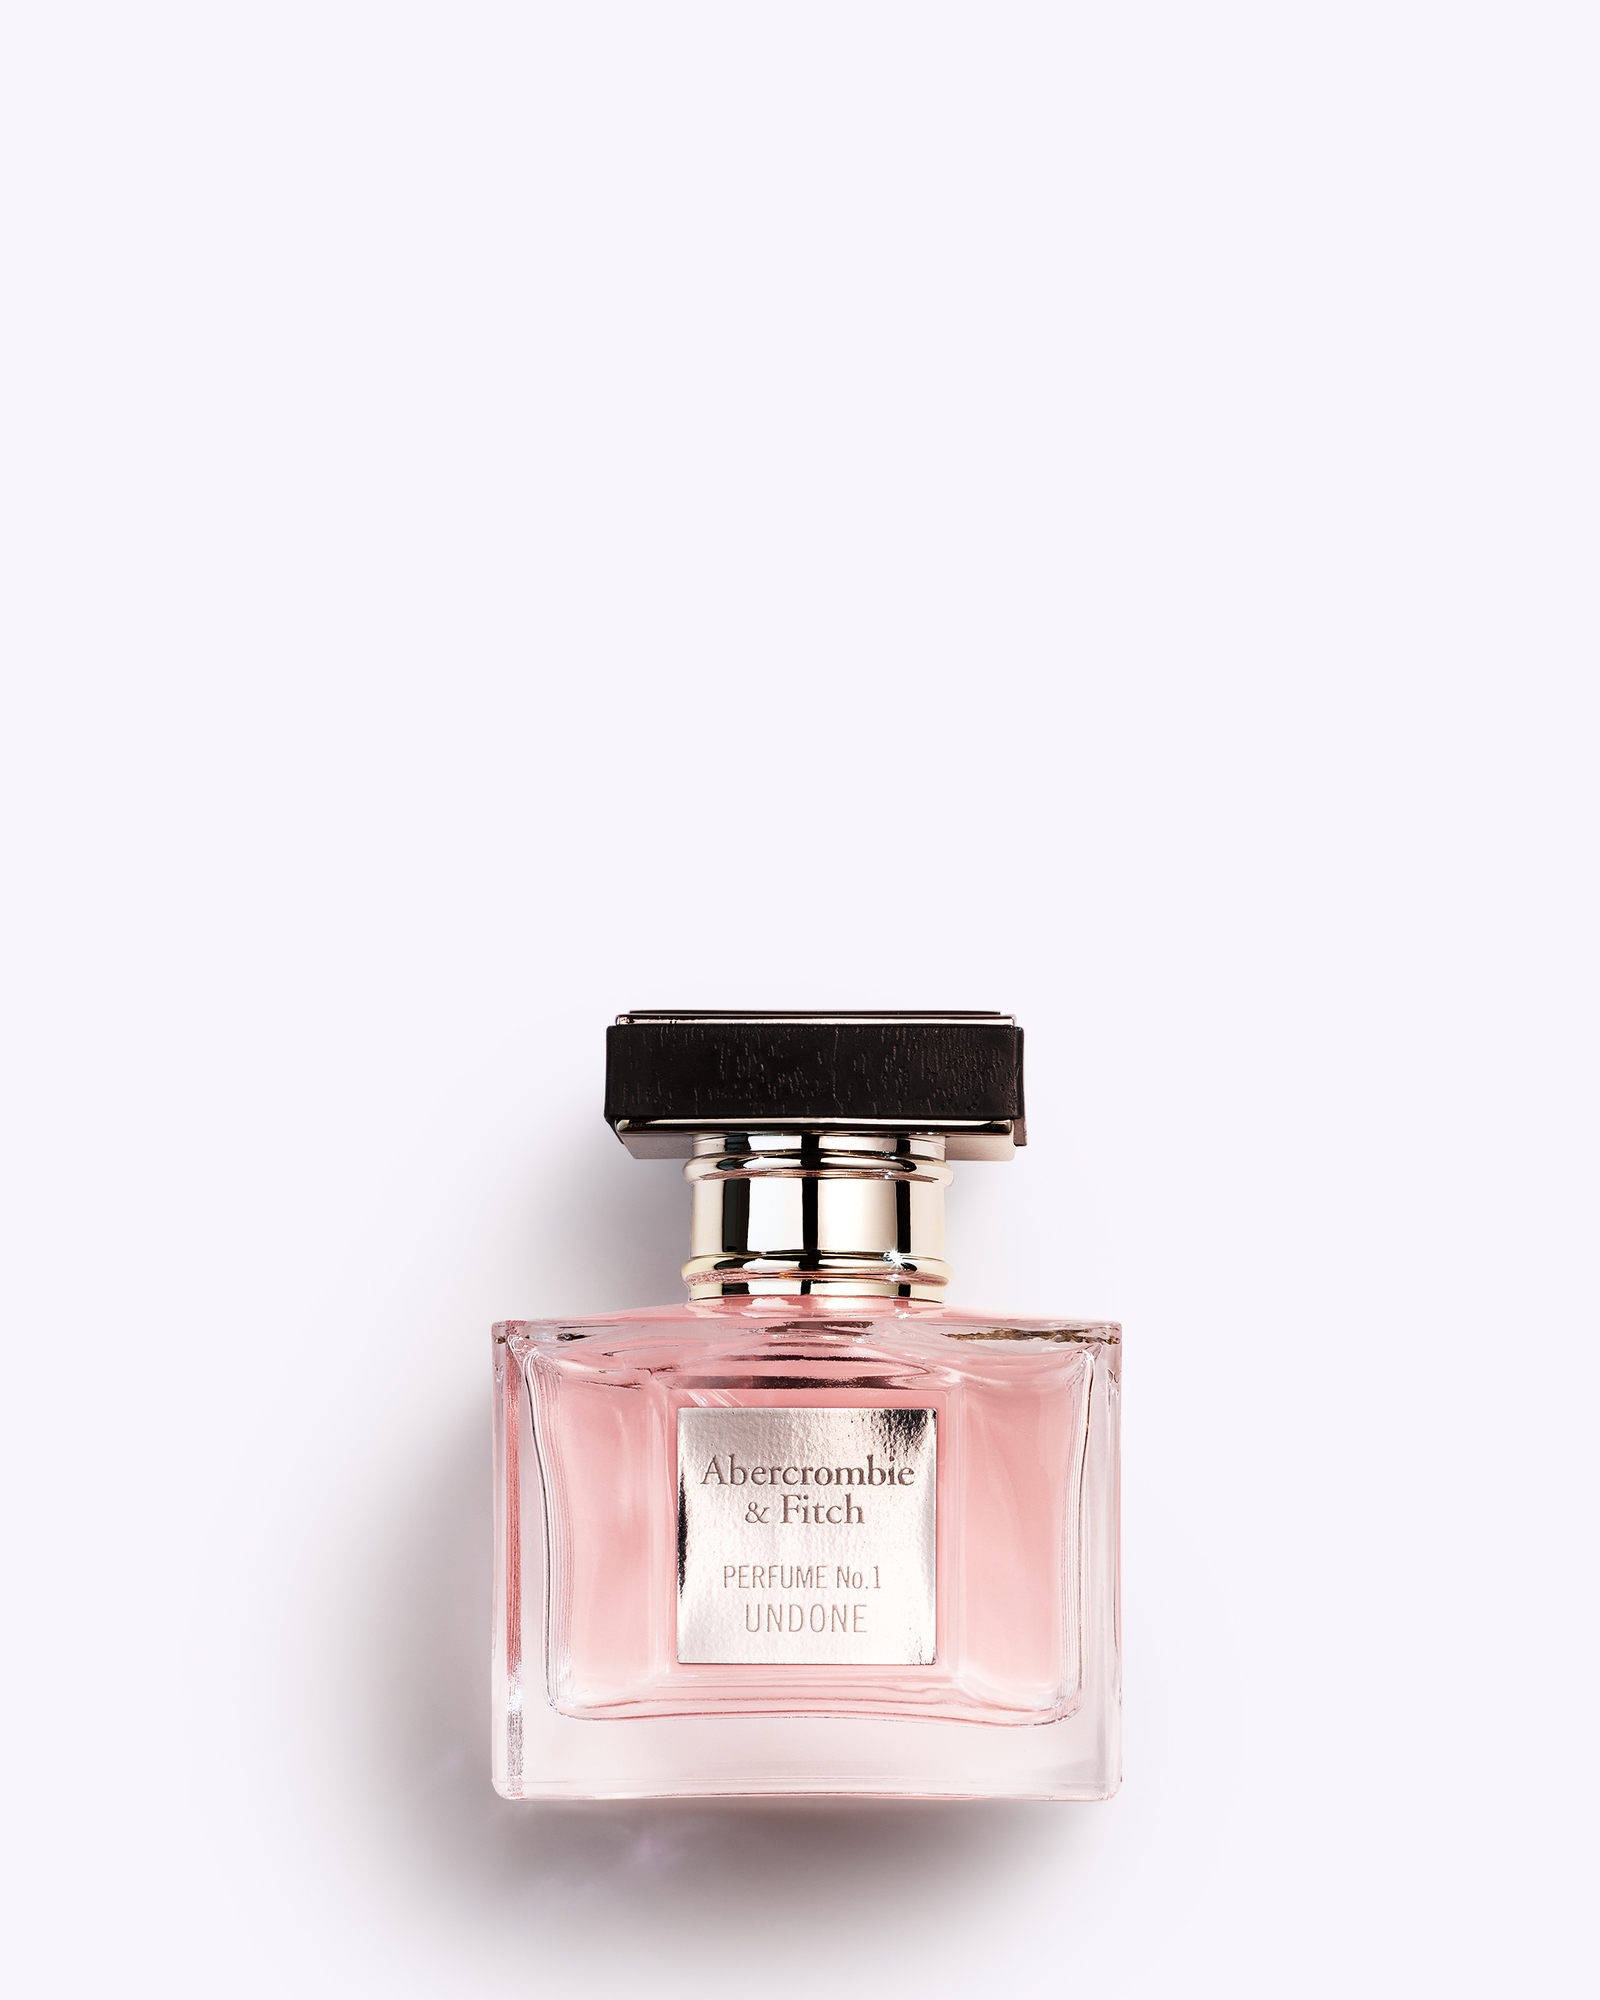 Perfume No. 1 Undone